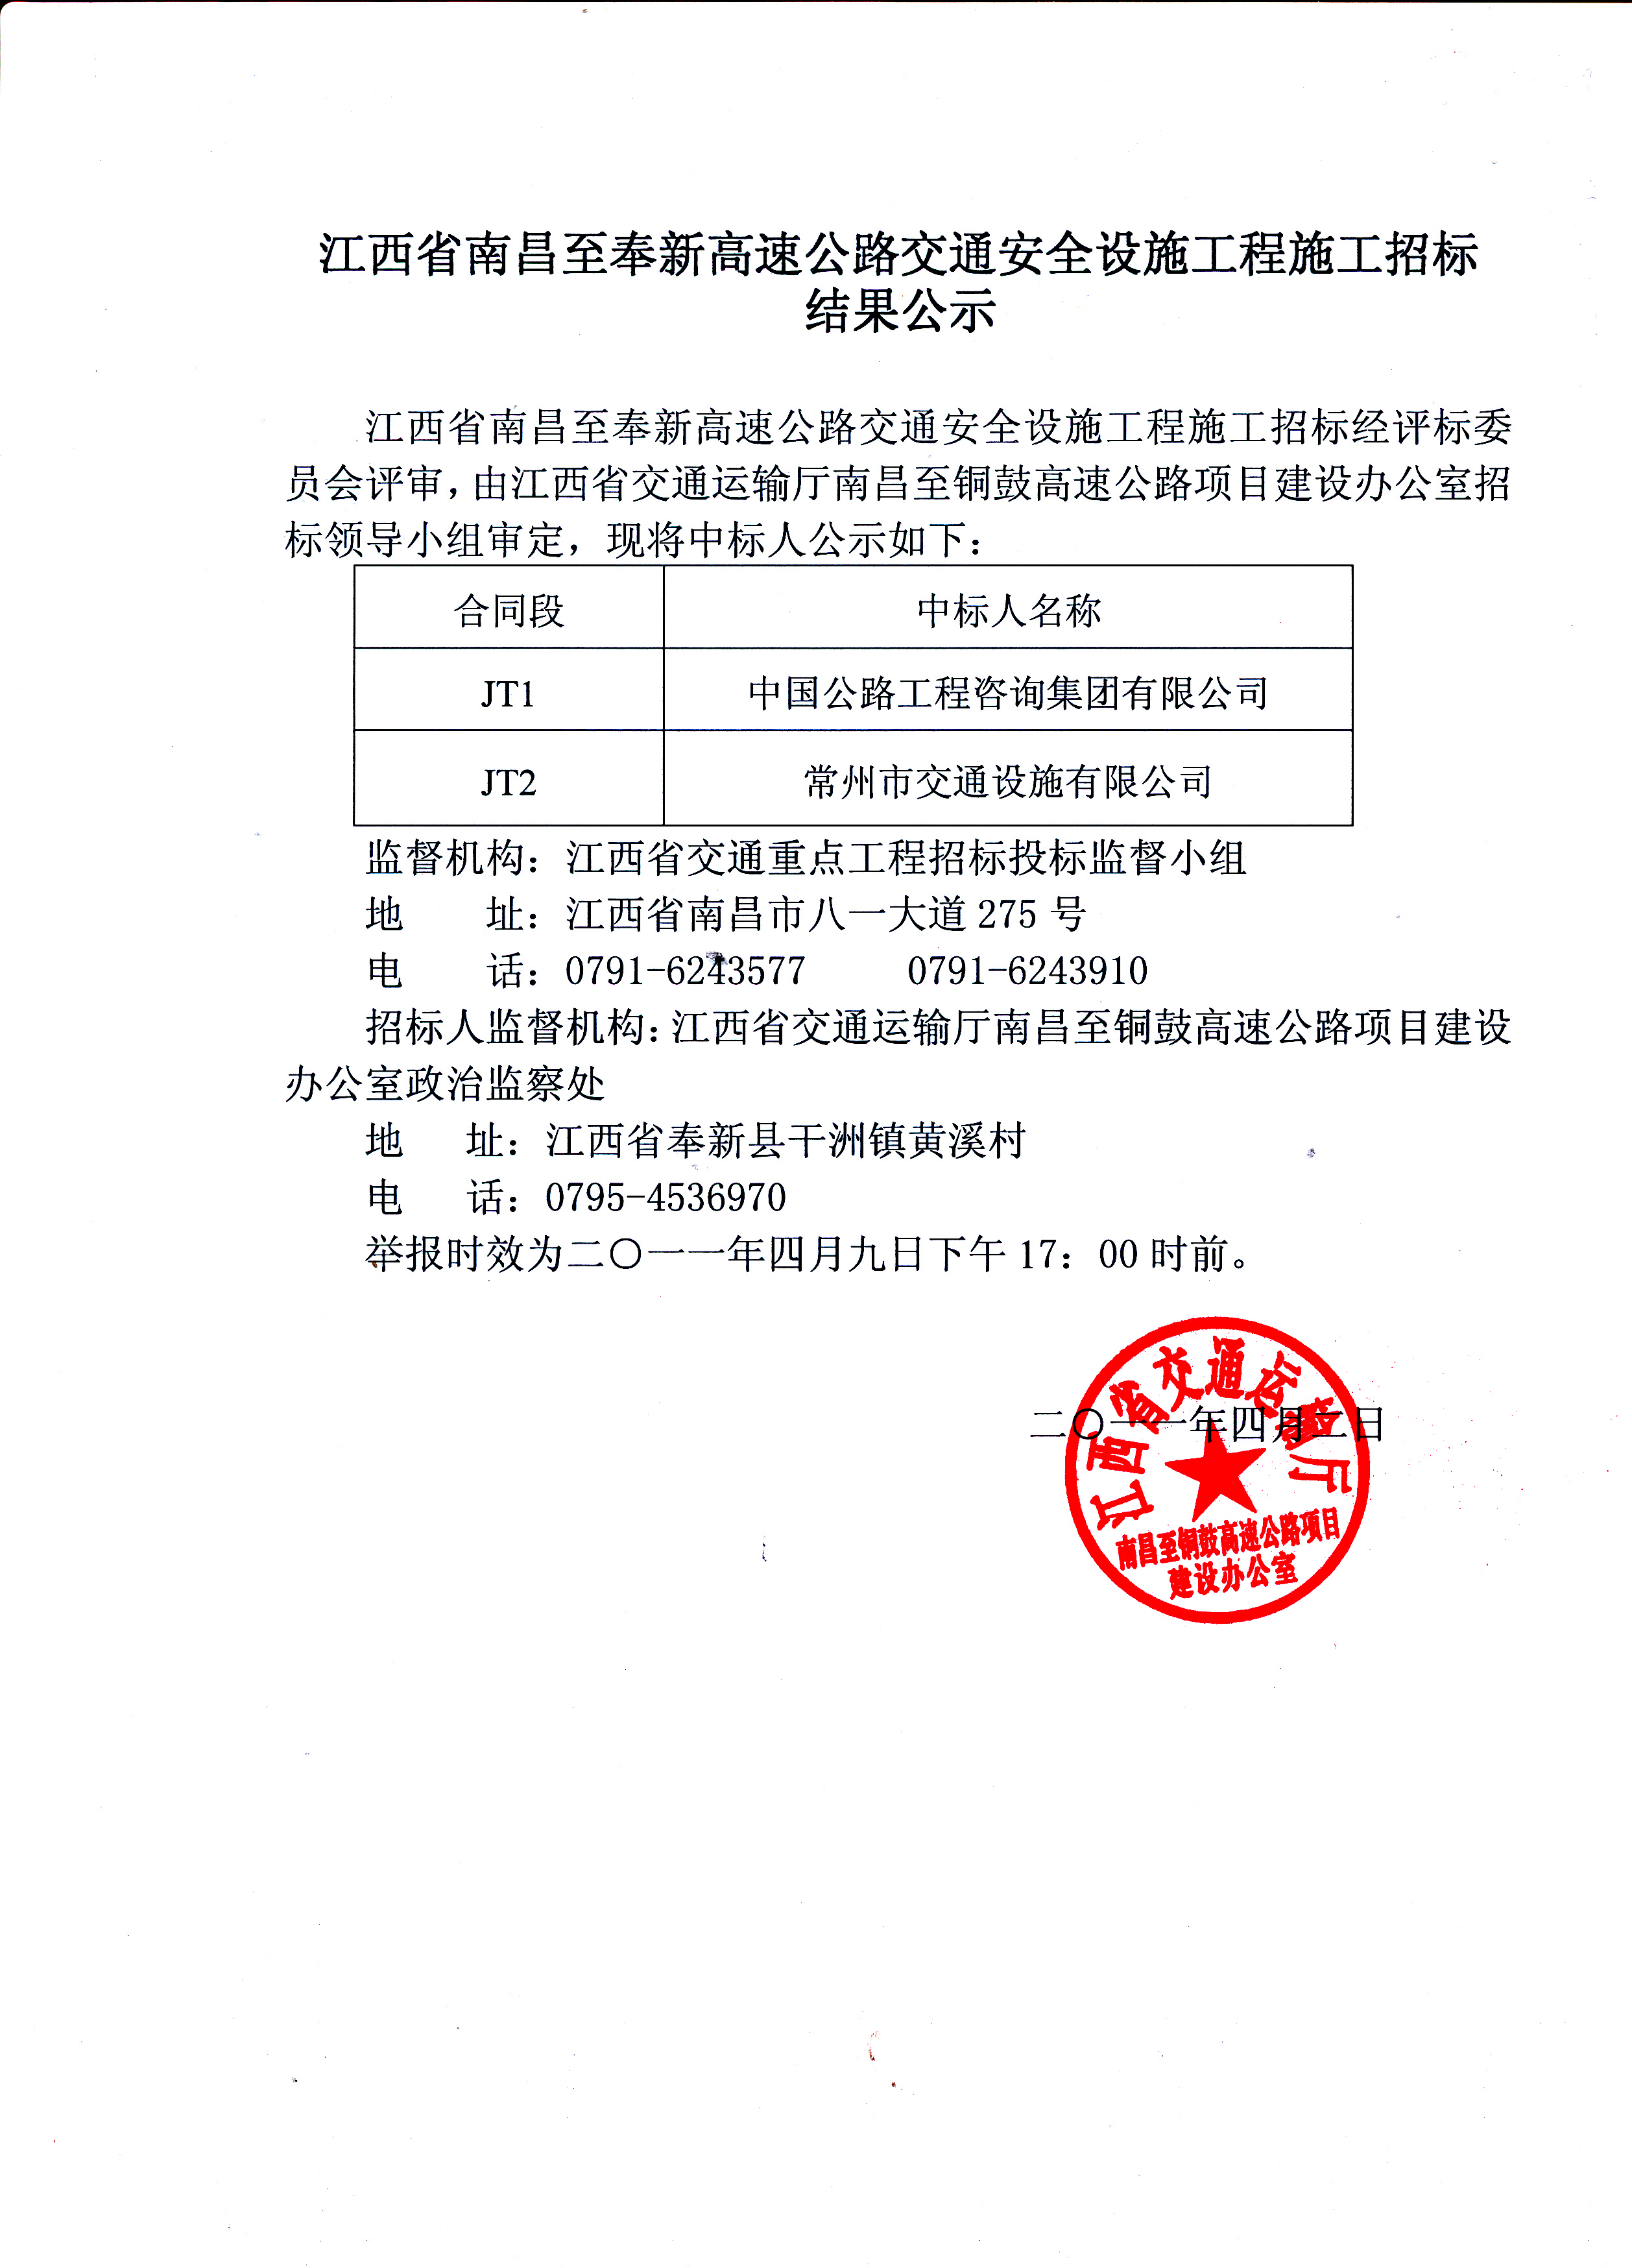 中国铁路南昌局ob欧宝集团有限公司鹰潭工务机械段二次招标公告